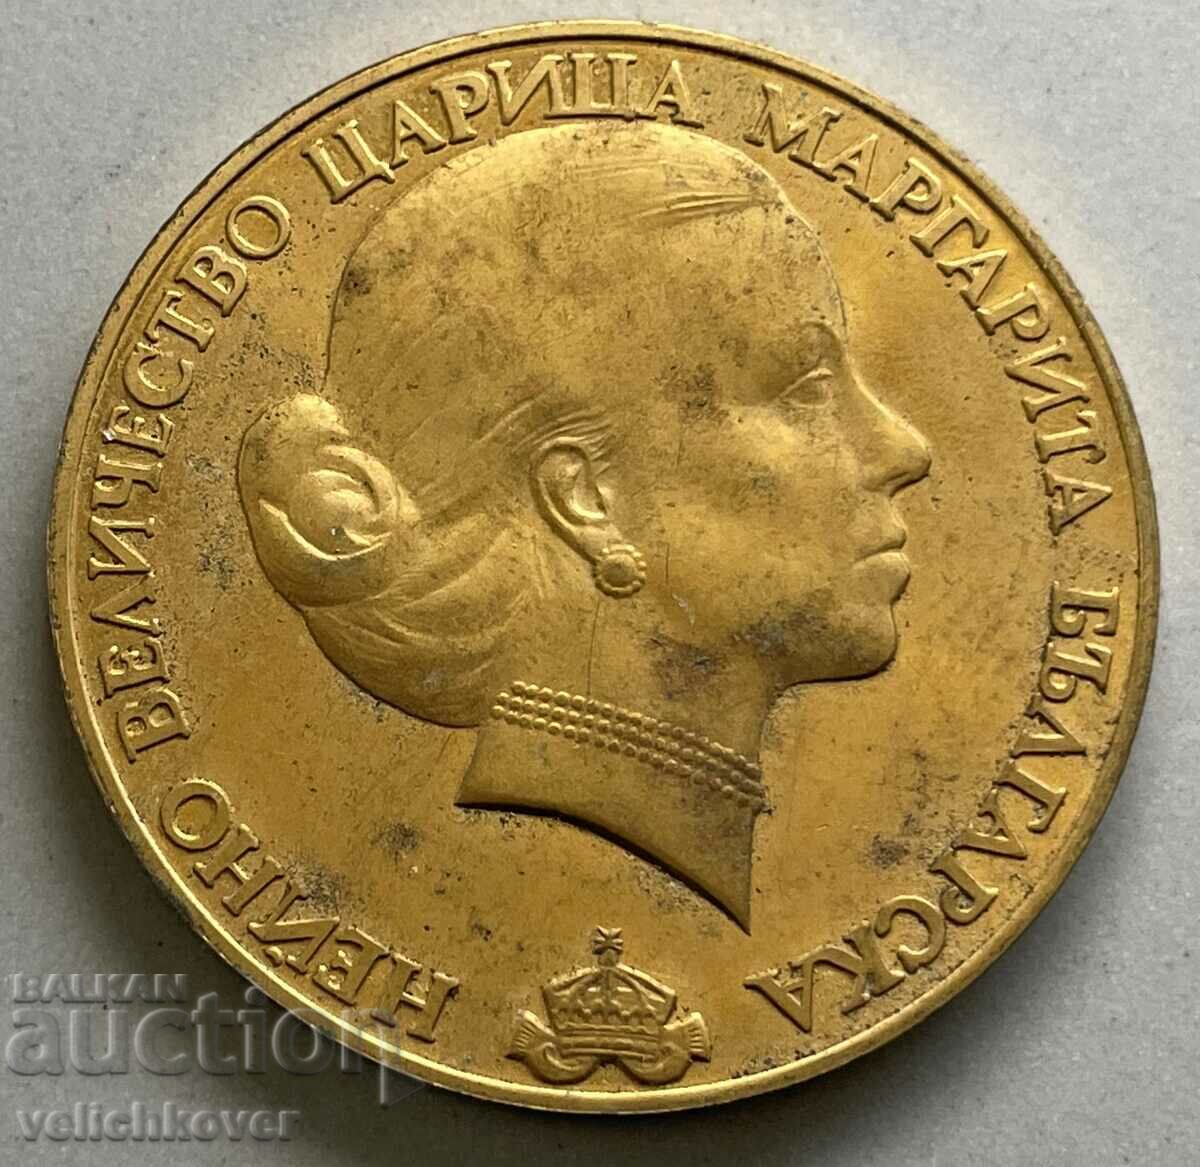 34358 Βουλγαρία μετάλλιο Τσαρίτσα Μαργαρίτα ρυθμική γυμνάστρια